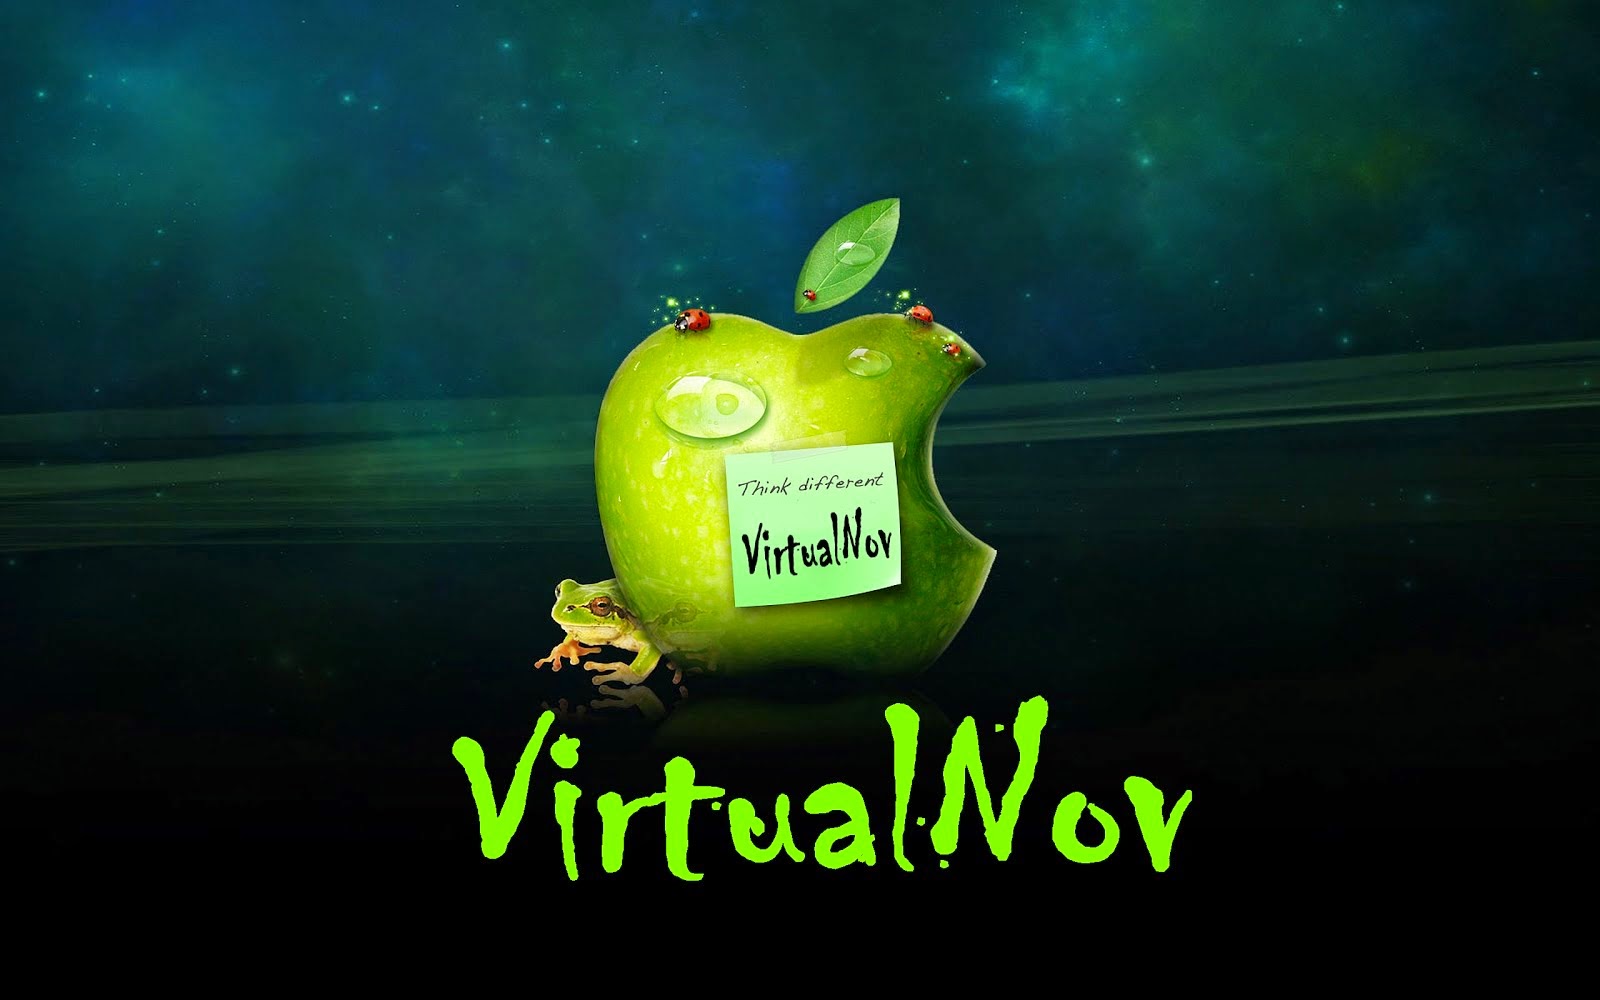 Club VirtualNov